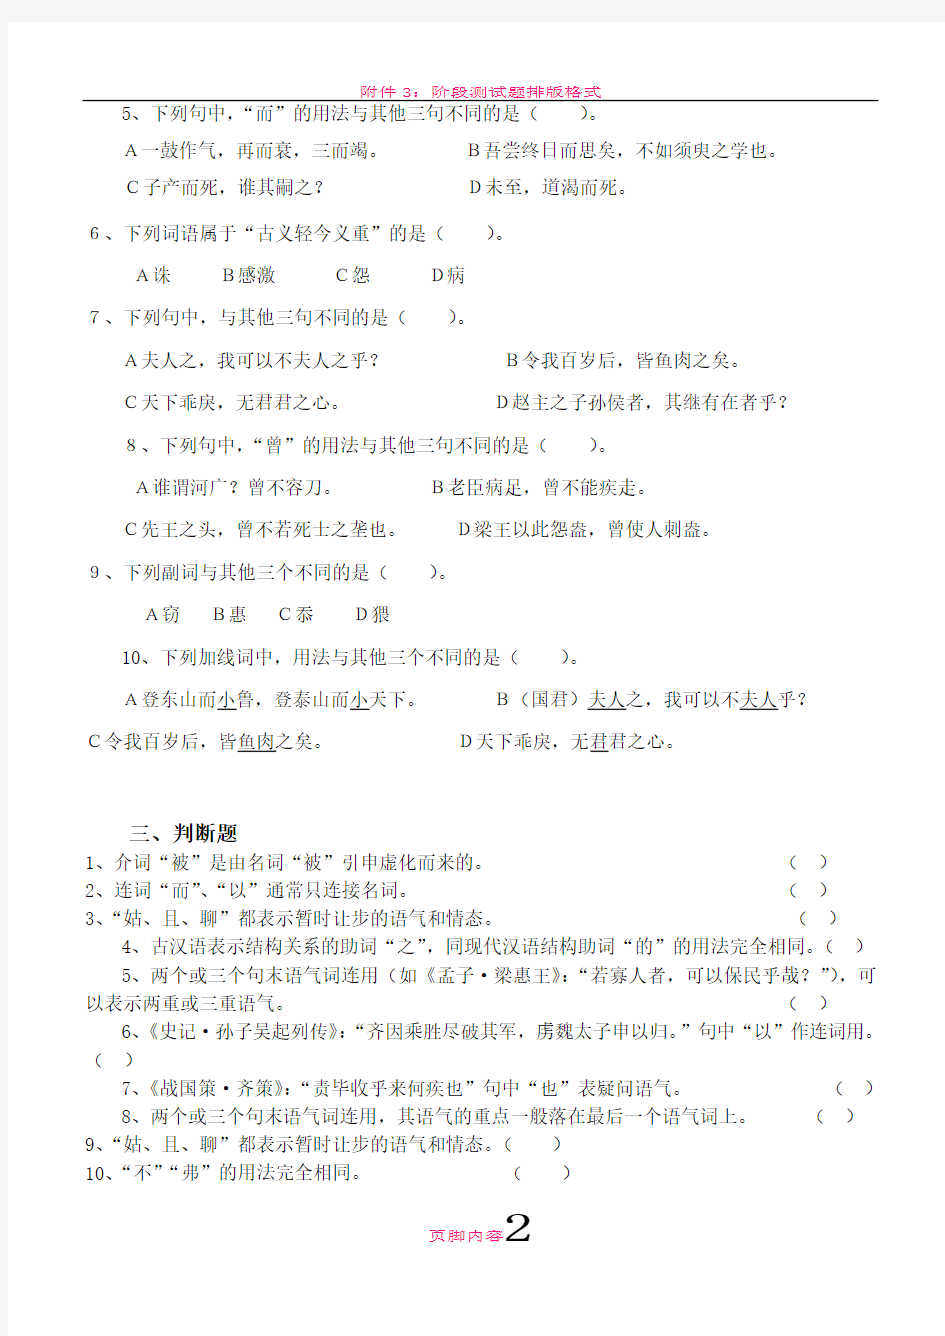 古代汉语第2阶段测试题(语法)